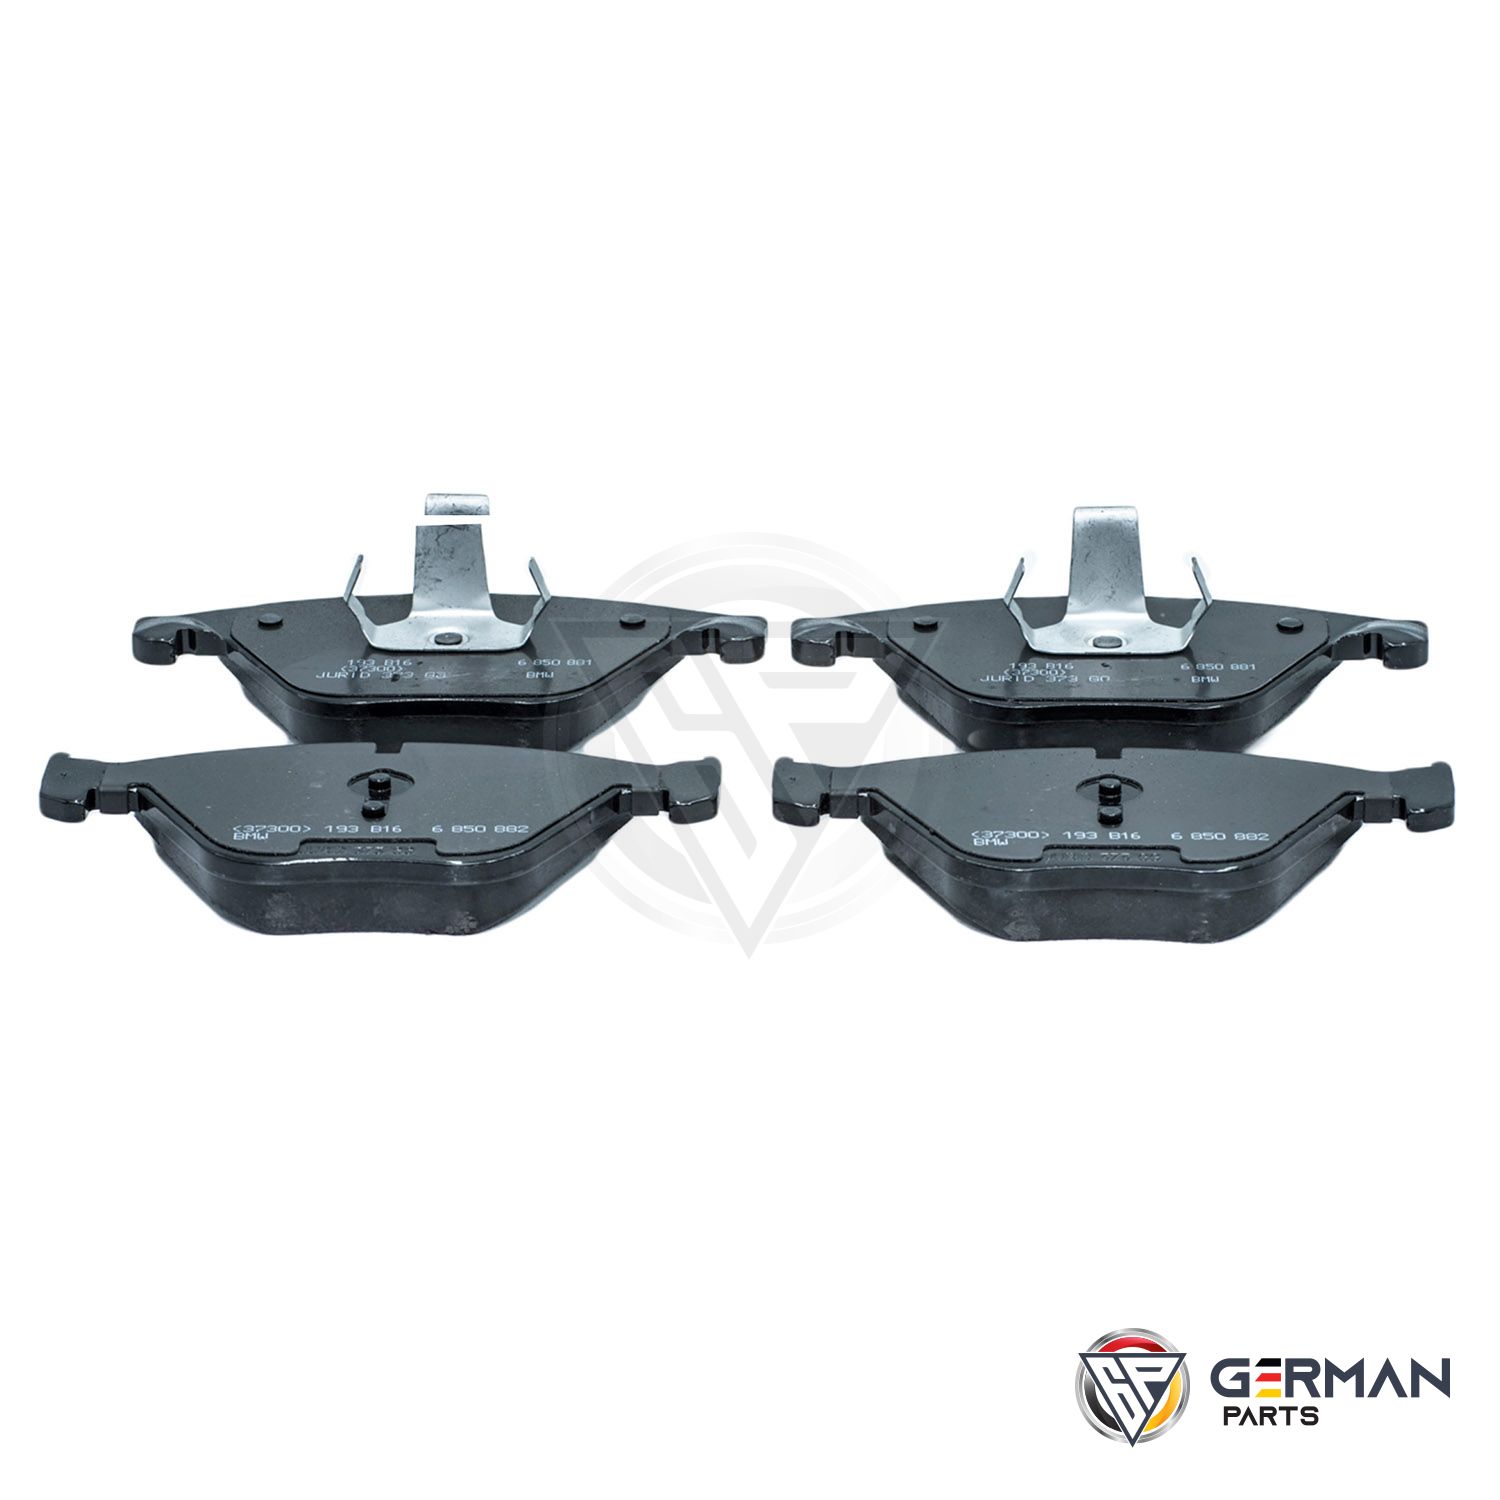 Buy BMW Front Brake Pad Set 34116850885 - German Parts